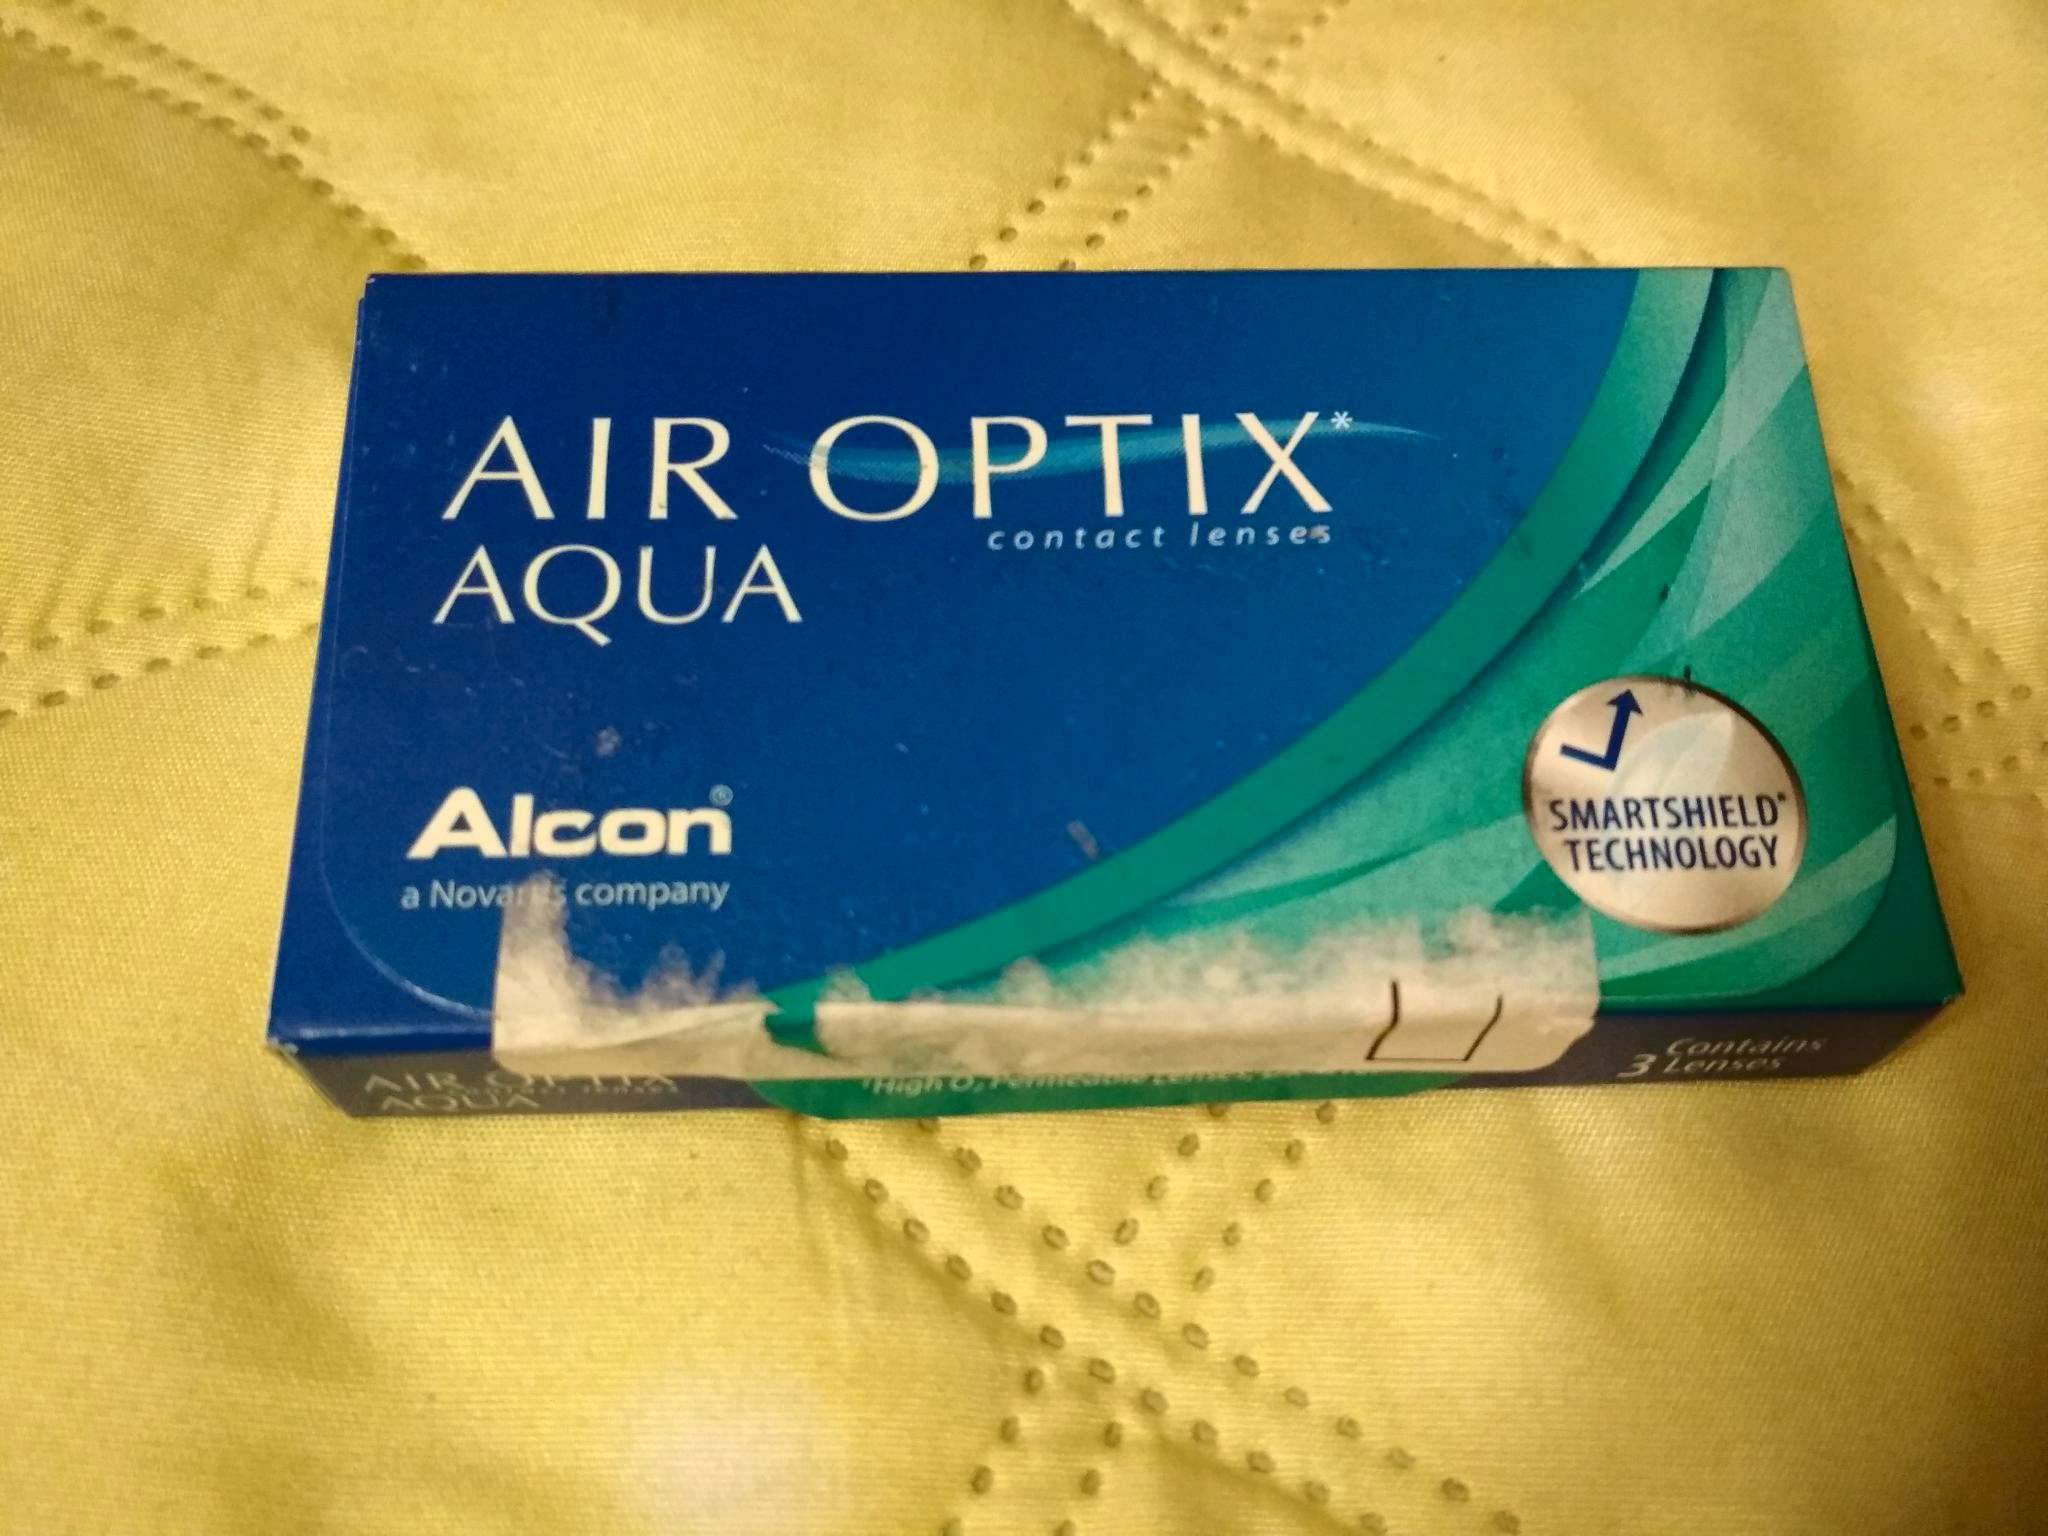 Обзор: контактные линзы air optix и их модели aqua, colors, night day, alcon — что нужно знать для правильного выбора